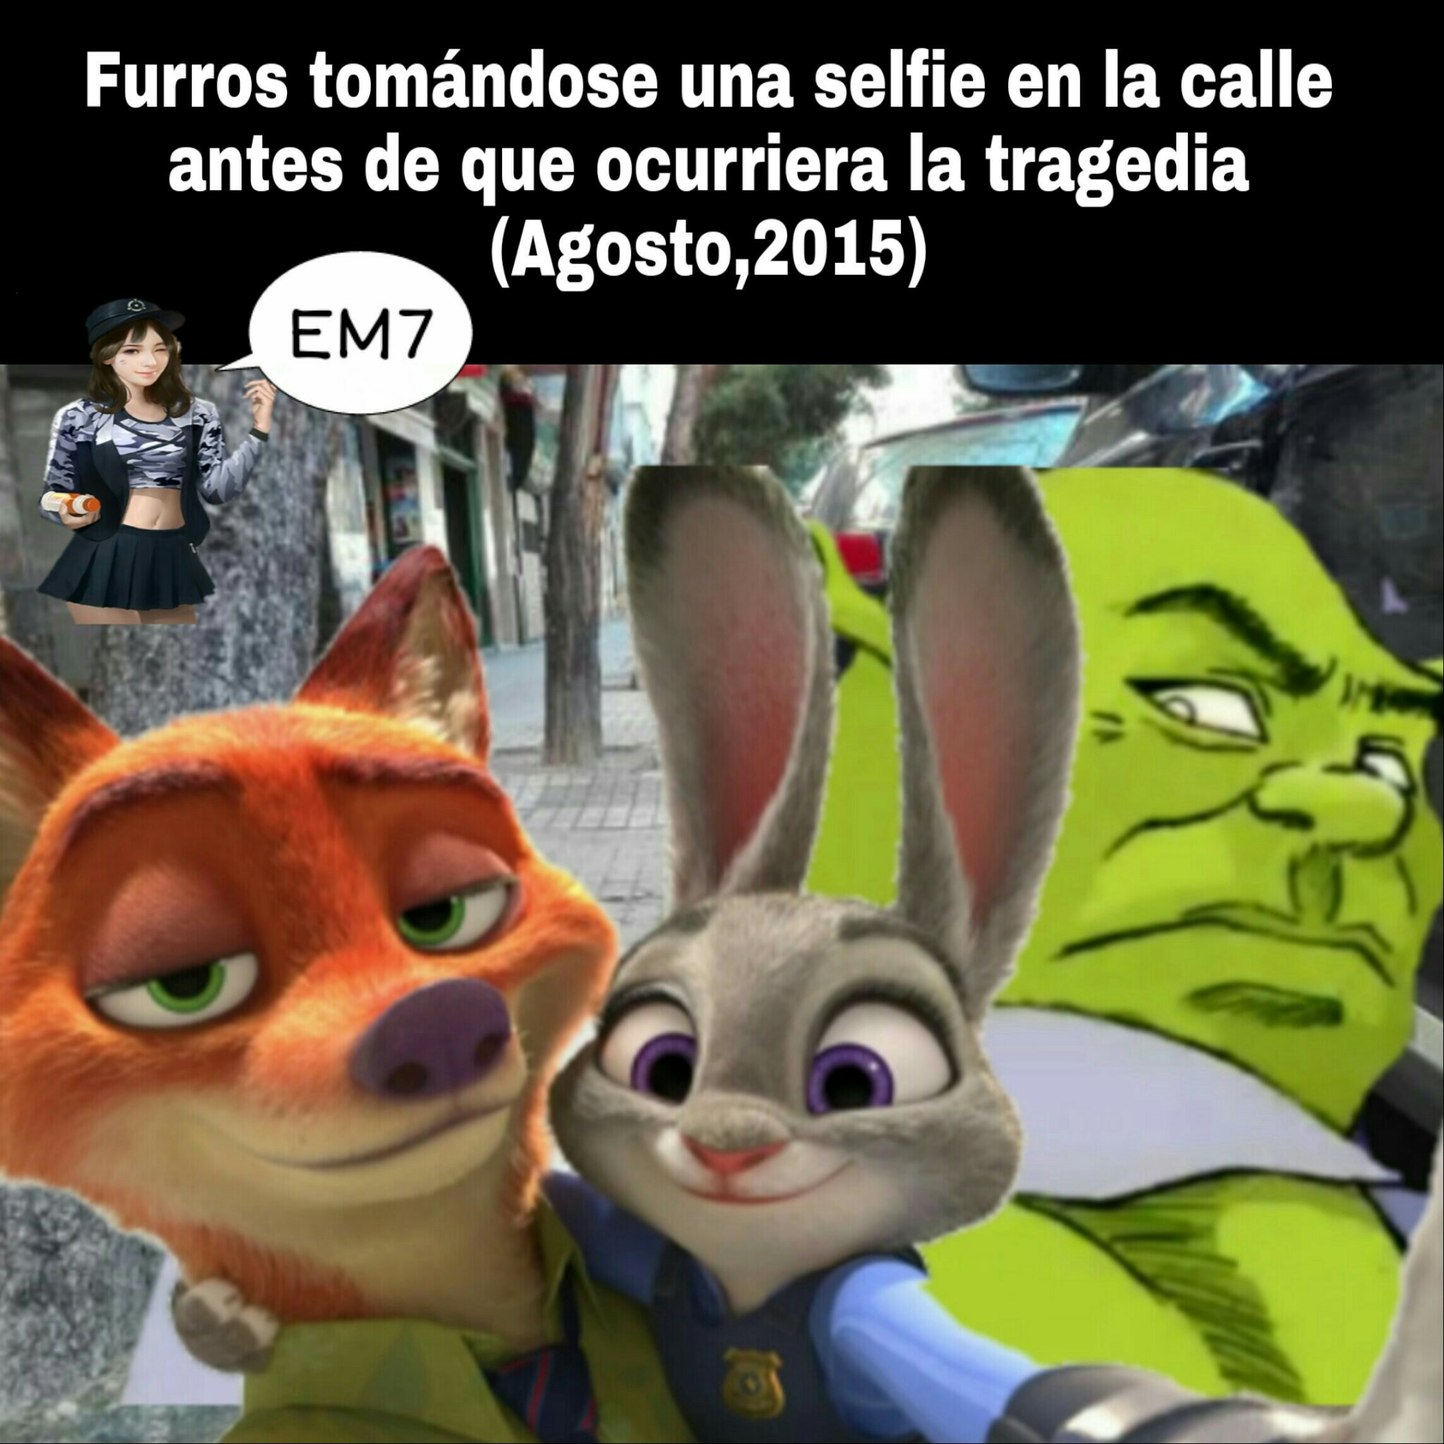 Top 7 selfies peligrosas - meme